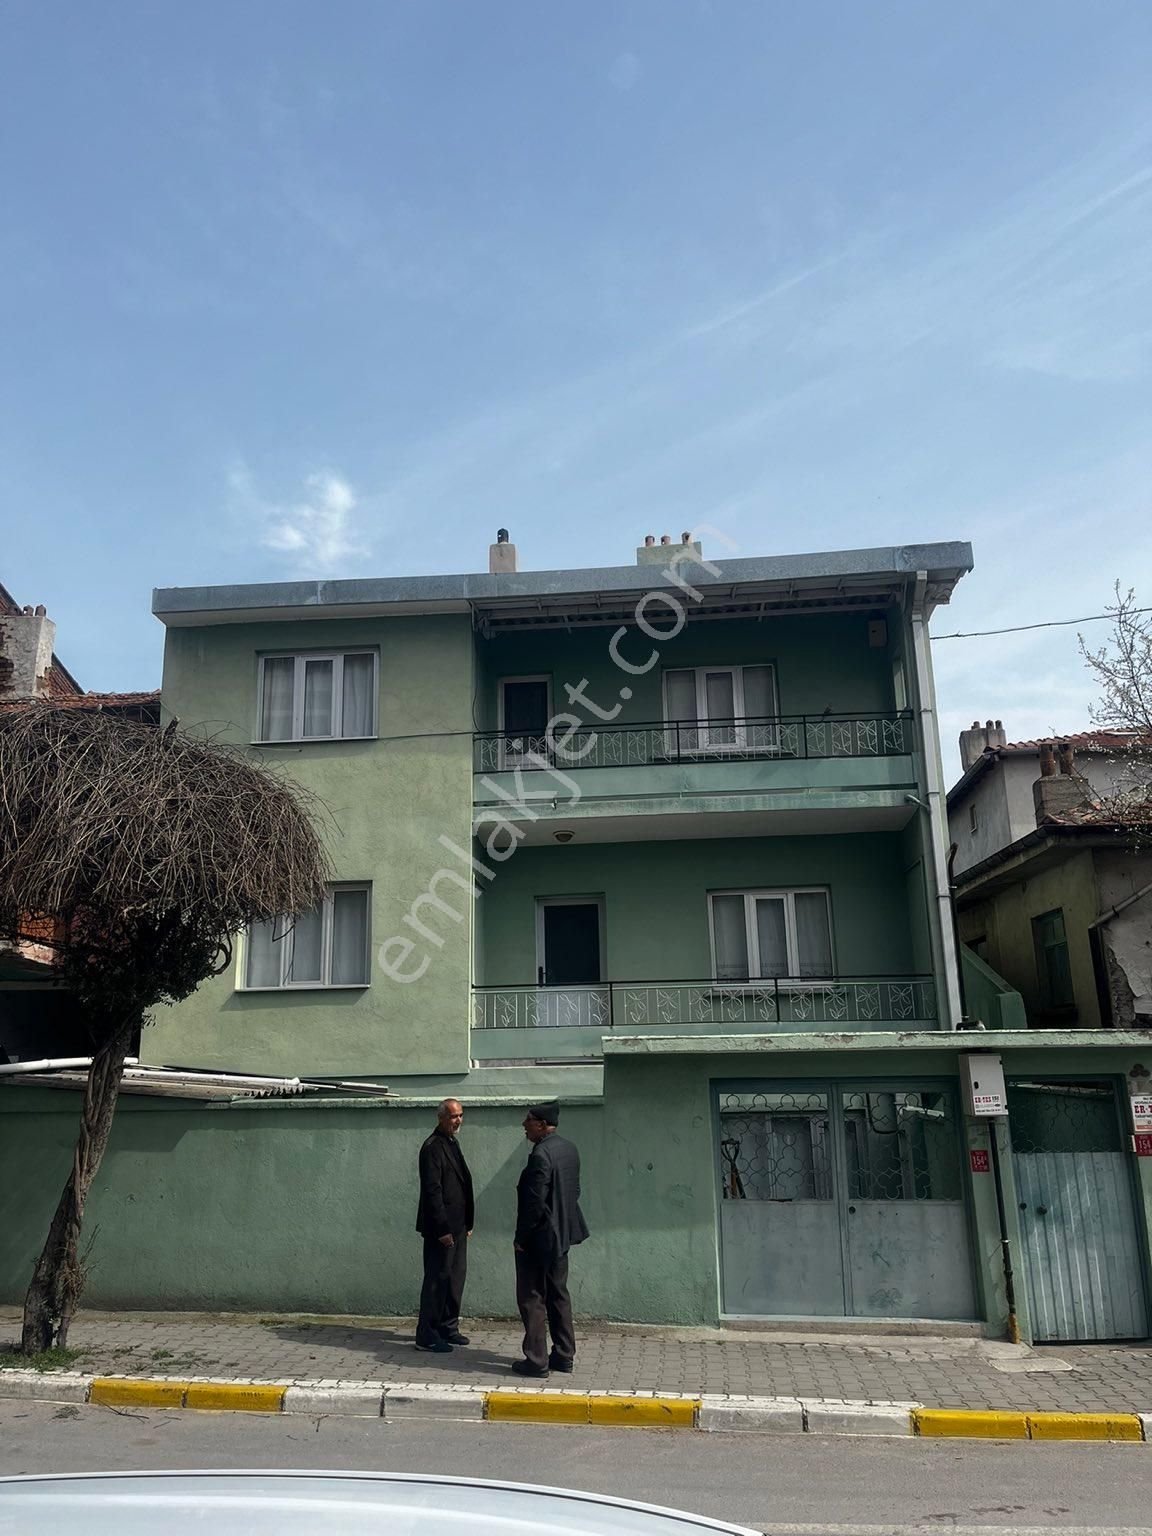 Karesi Maltepe Satılık Bina Balıkesir Bağlar sokağında 3 katlı satılık ev